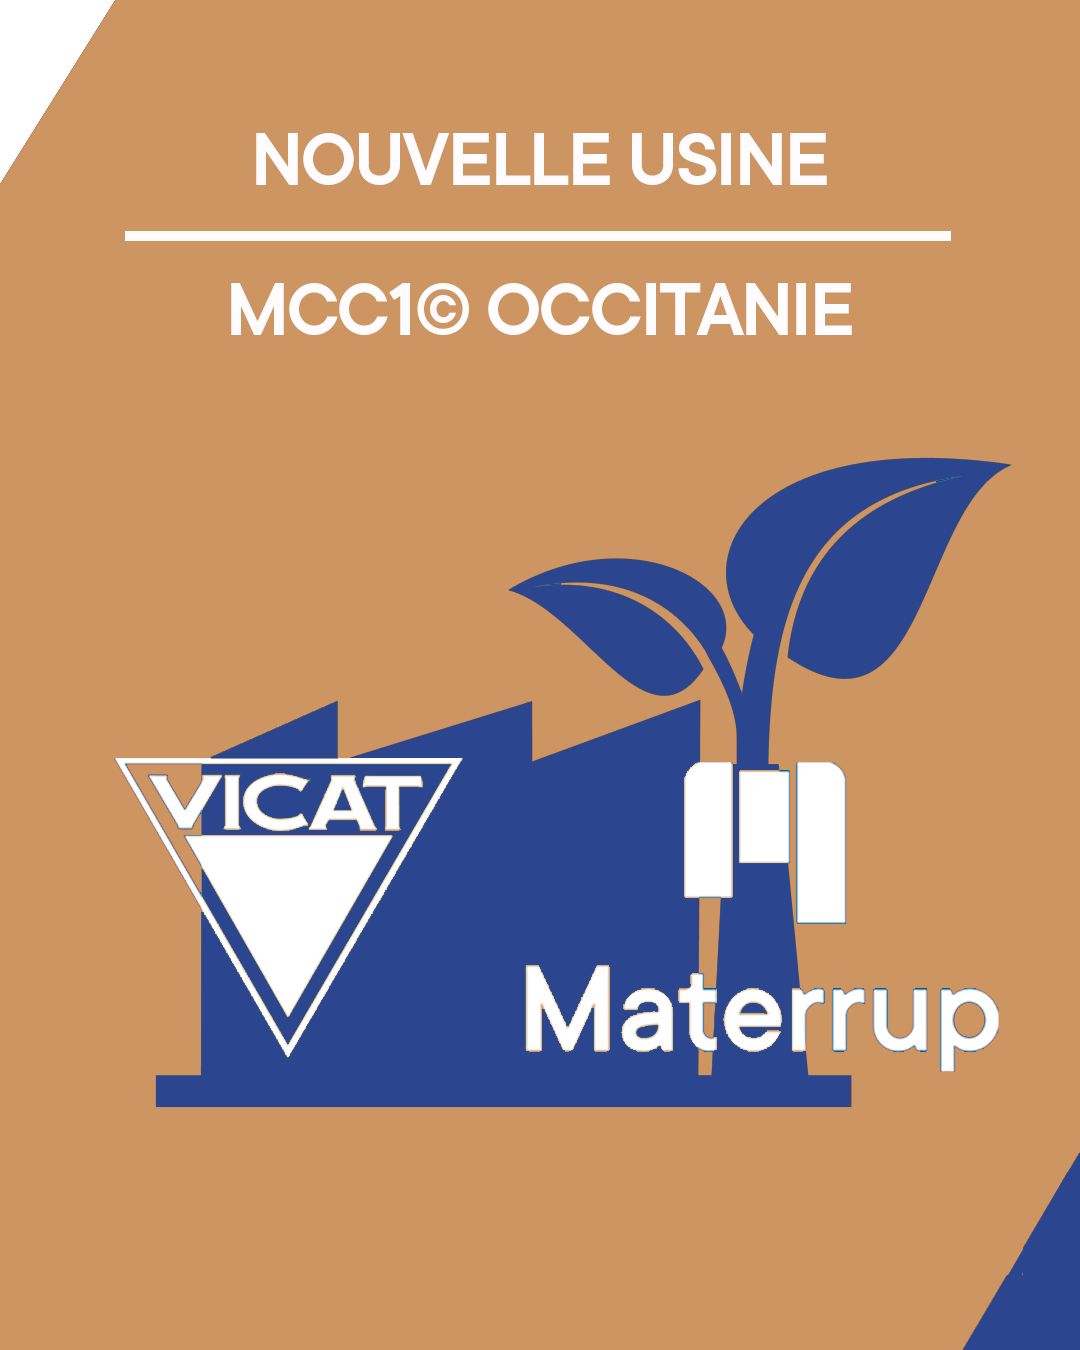 Nouvelle unité de production Vicat x Materrup